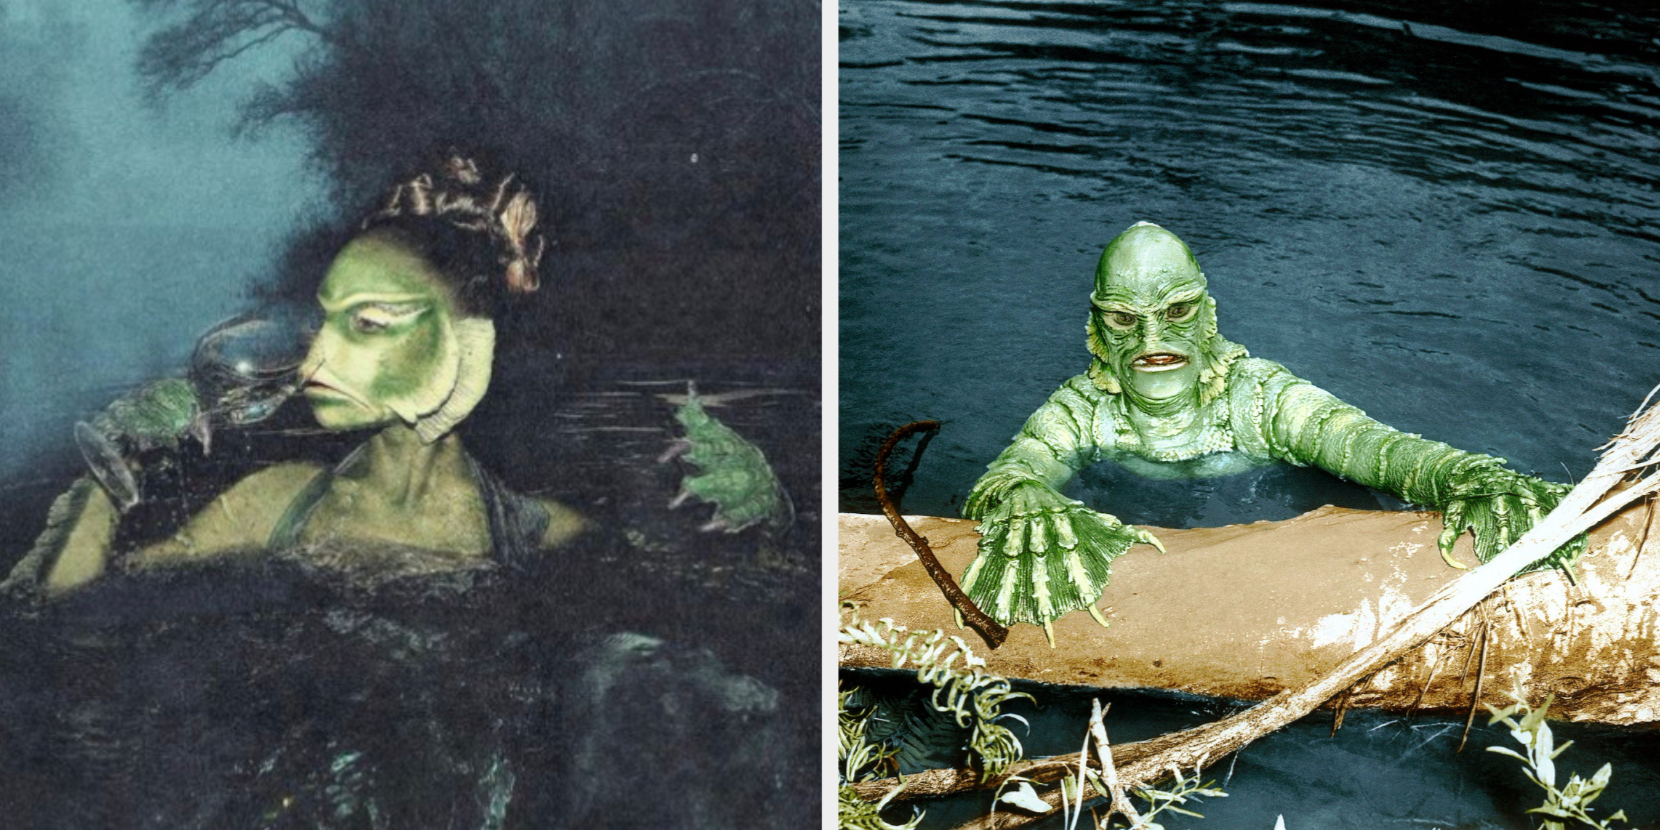 swamp monster costume homemade